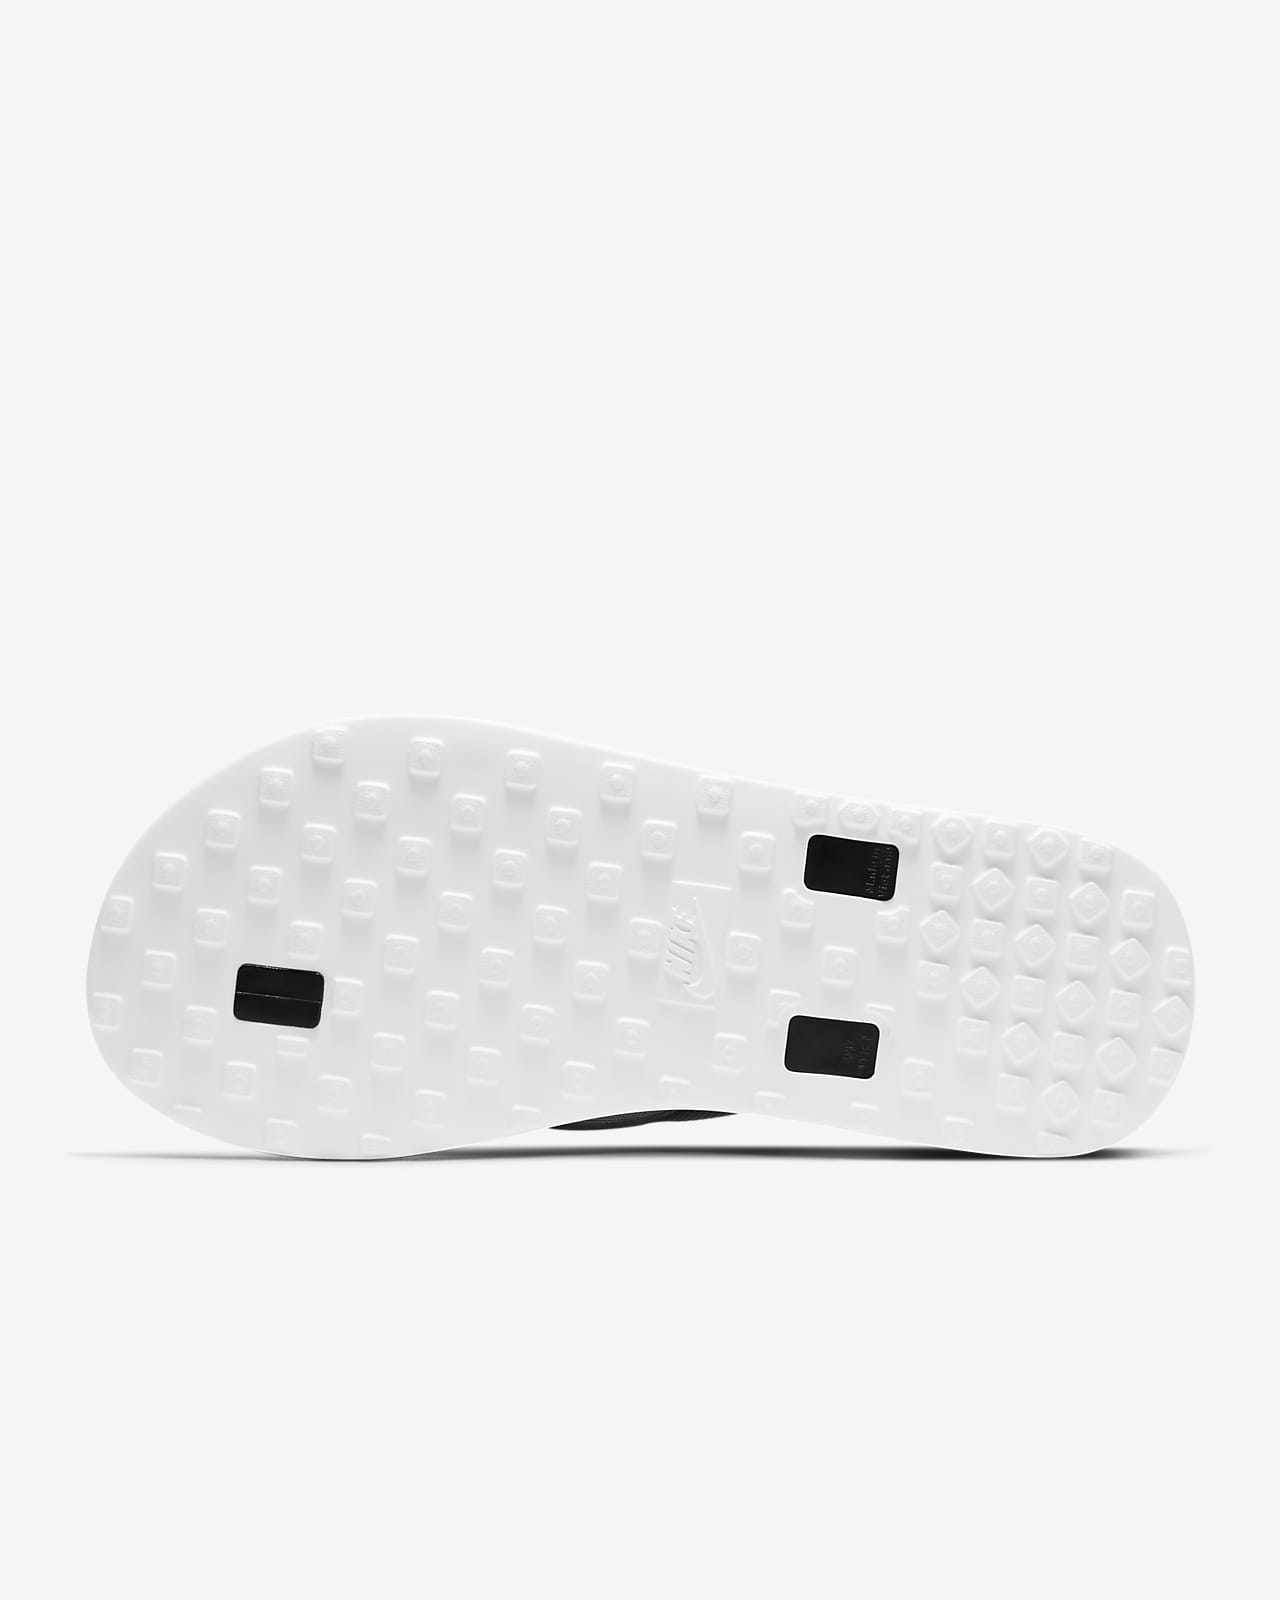 Nike On Deck Women's Slides.